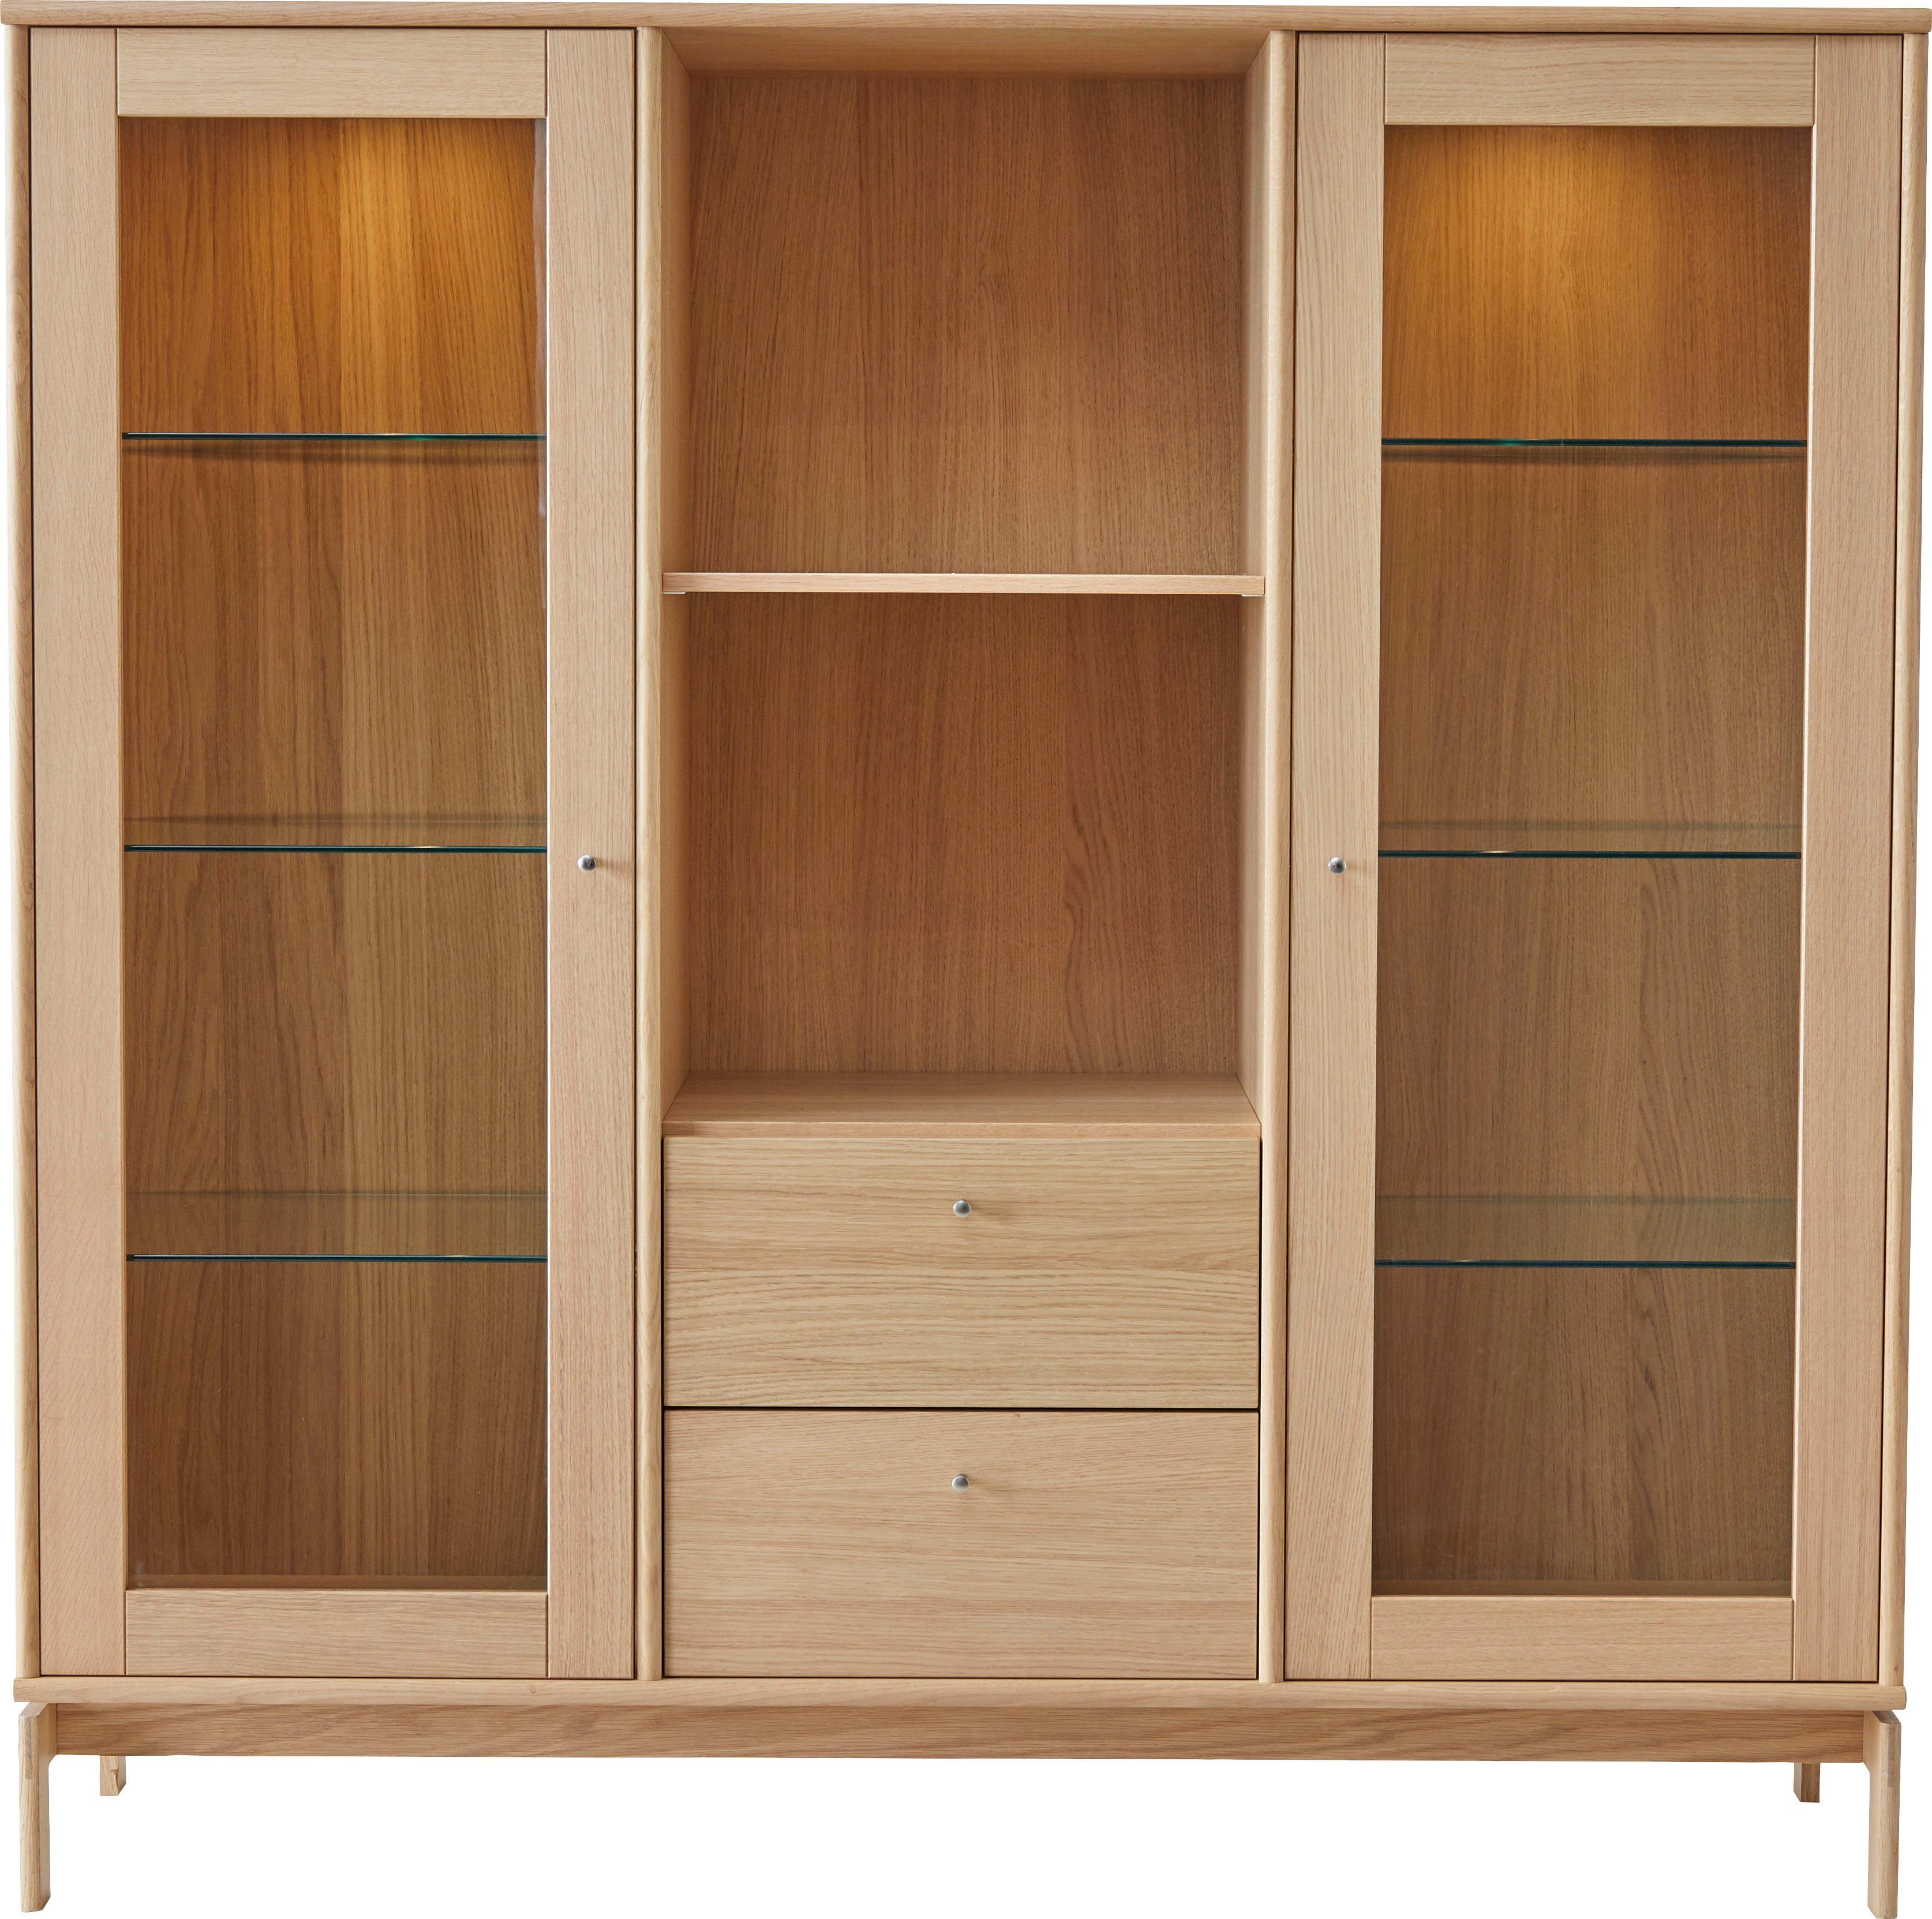 B: anpassungsbar Furniture Türen Eiche, cm, mit Mistral Designmöbel Vitrine Hammel Glasschrank, Schubladen, Standvitrine und 133